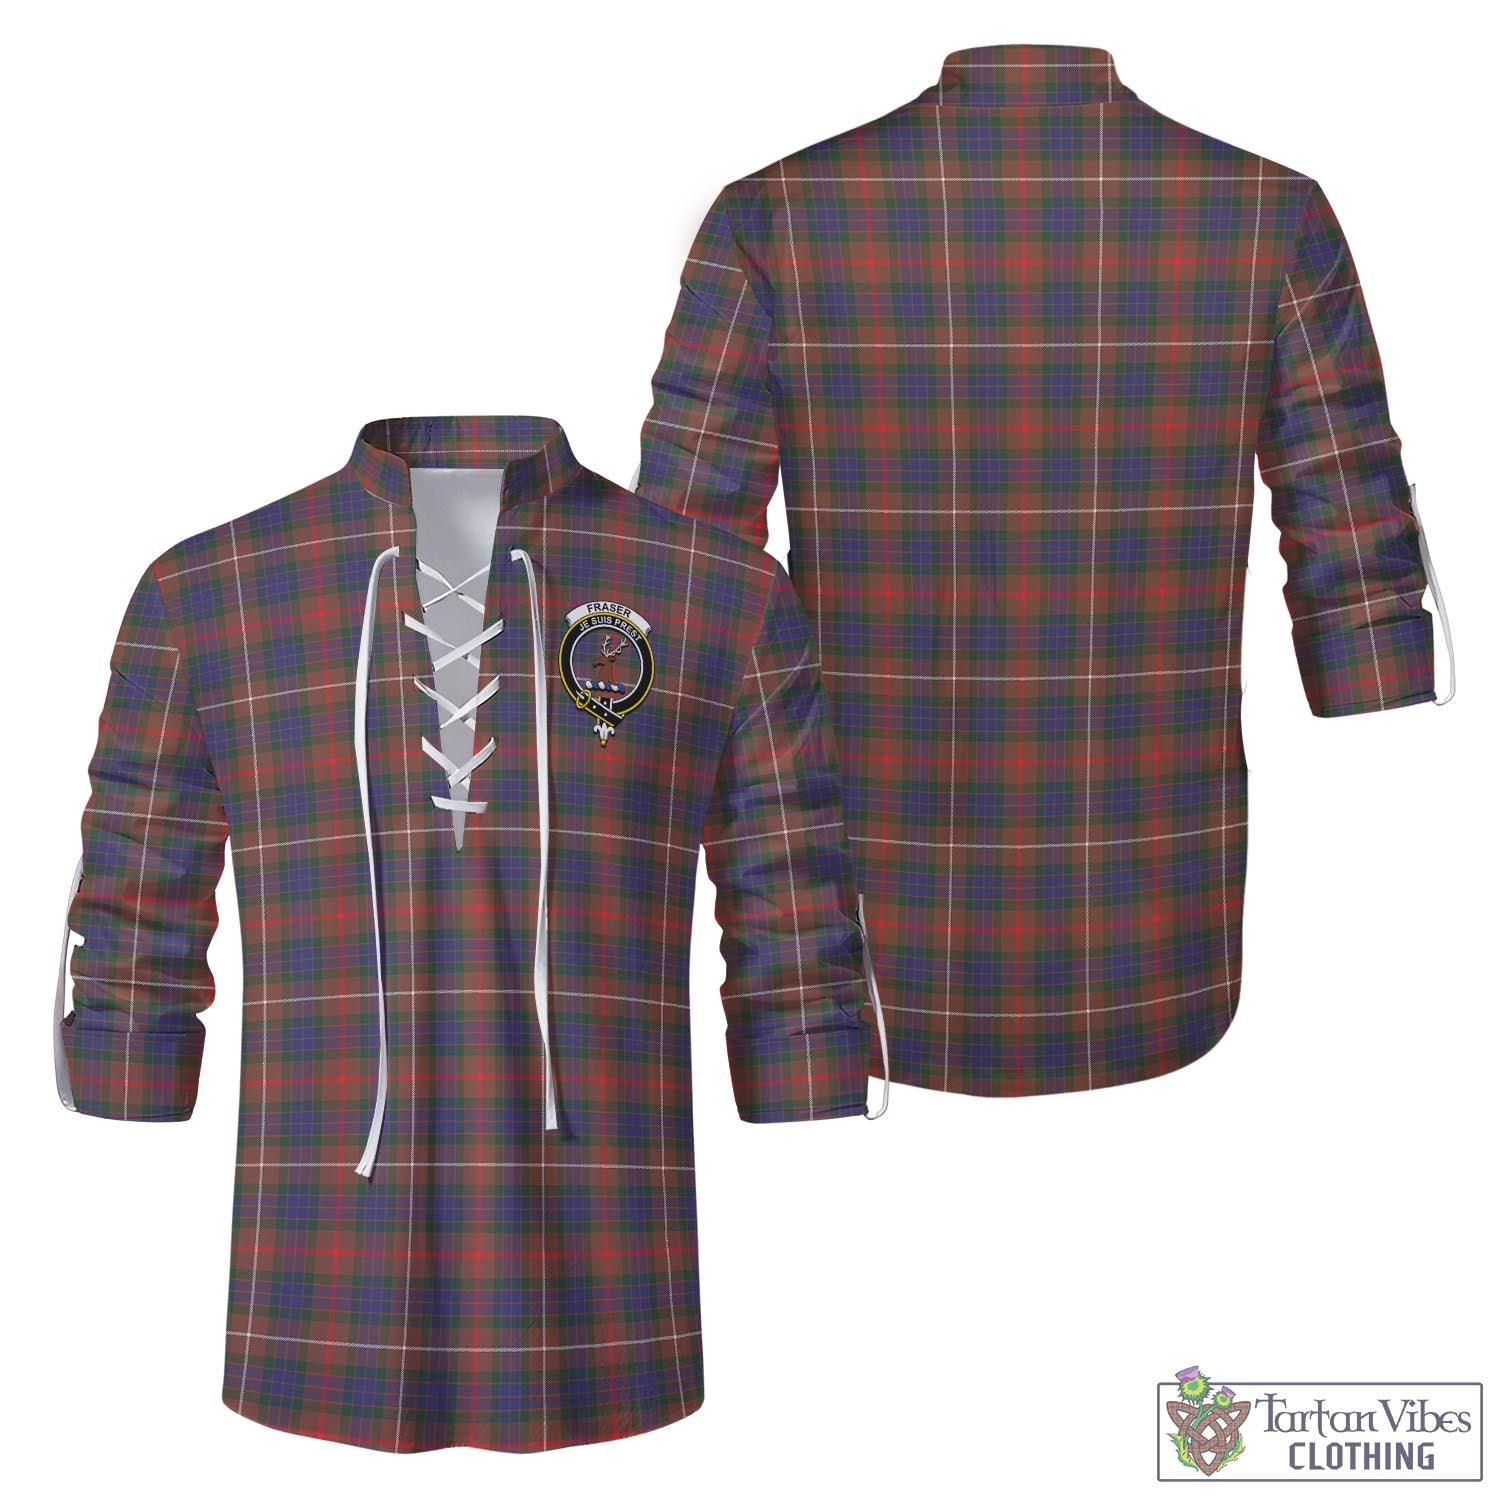 Tartan Vibes Clothing Fraser Hunting Modern Tartan Men's Scottish Traditional Jacobite Ghillie Kilt Shirt with Family Crest